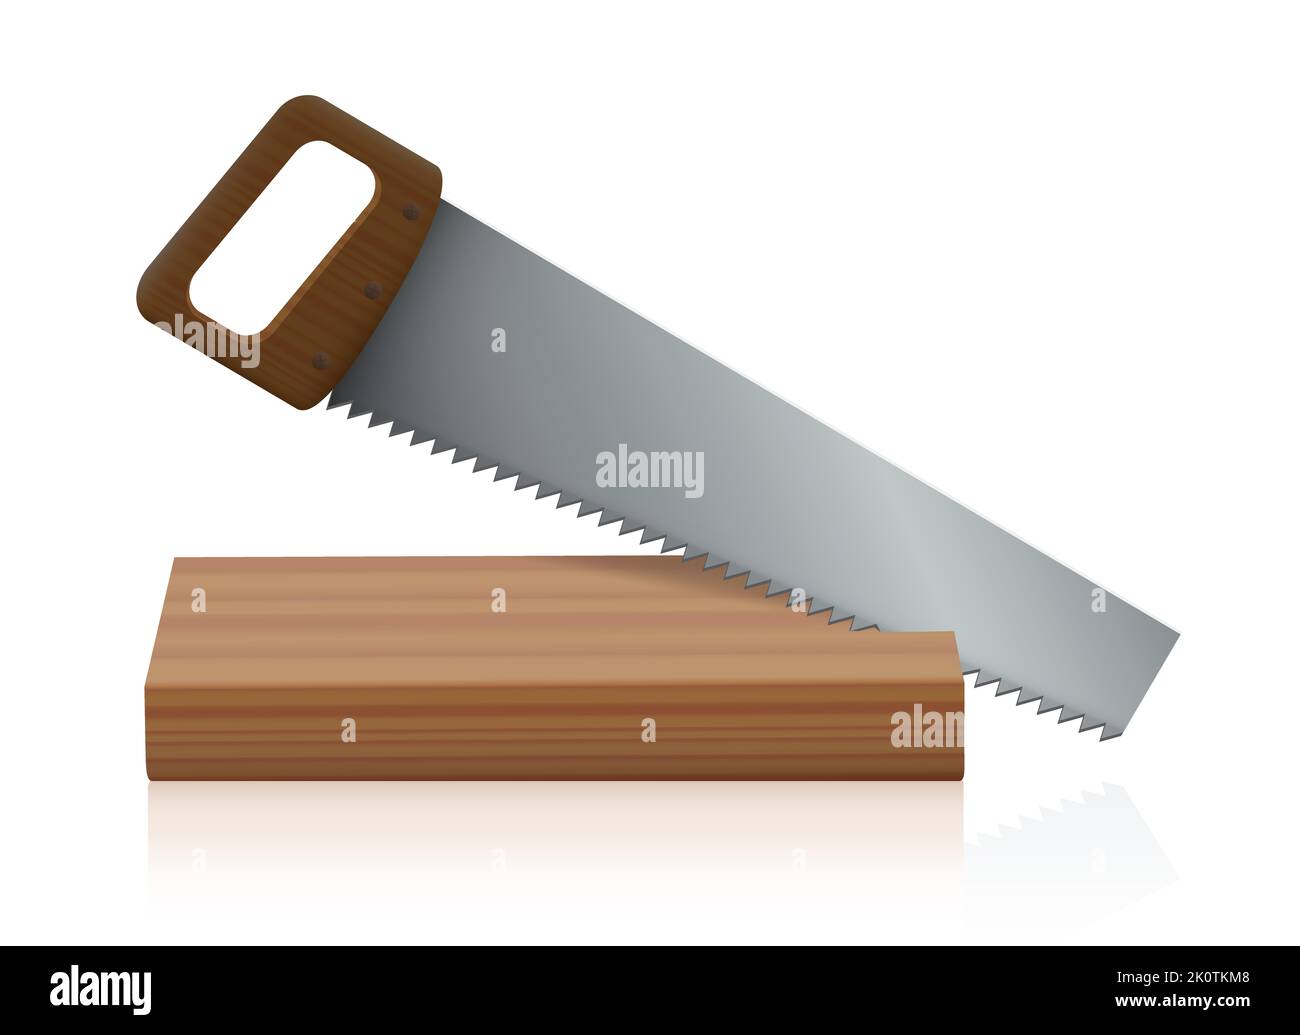 Handsäge, Sägen eines Holzbretts. Ripsaw mit Holzgriff, Metallsägeblatt und spitzen scharfen Sägezähnen - Abbildung auf weißem Hintergrund. Stockfoto